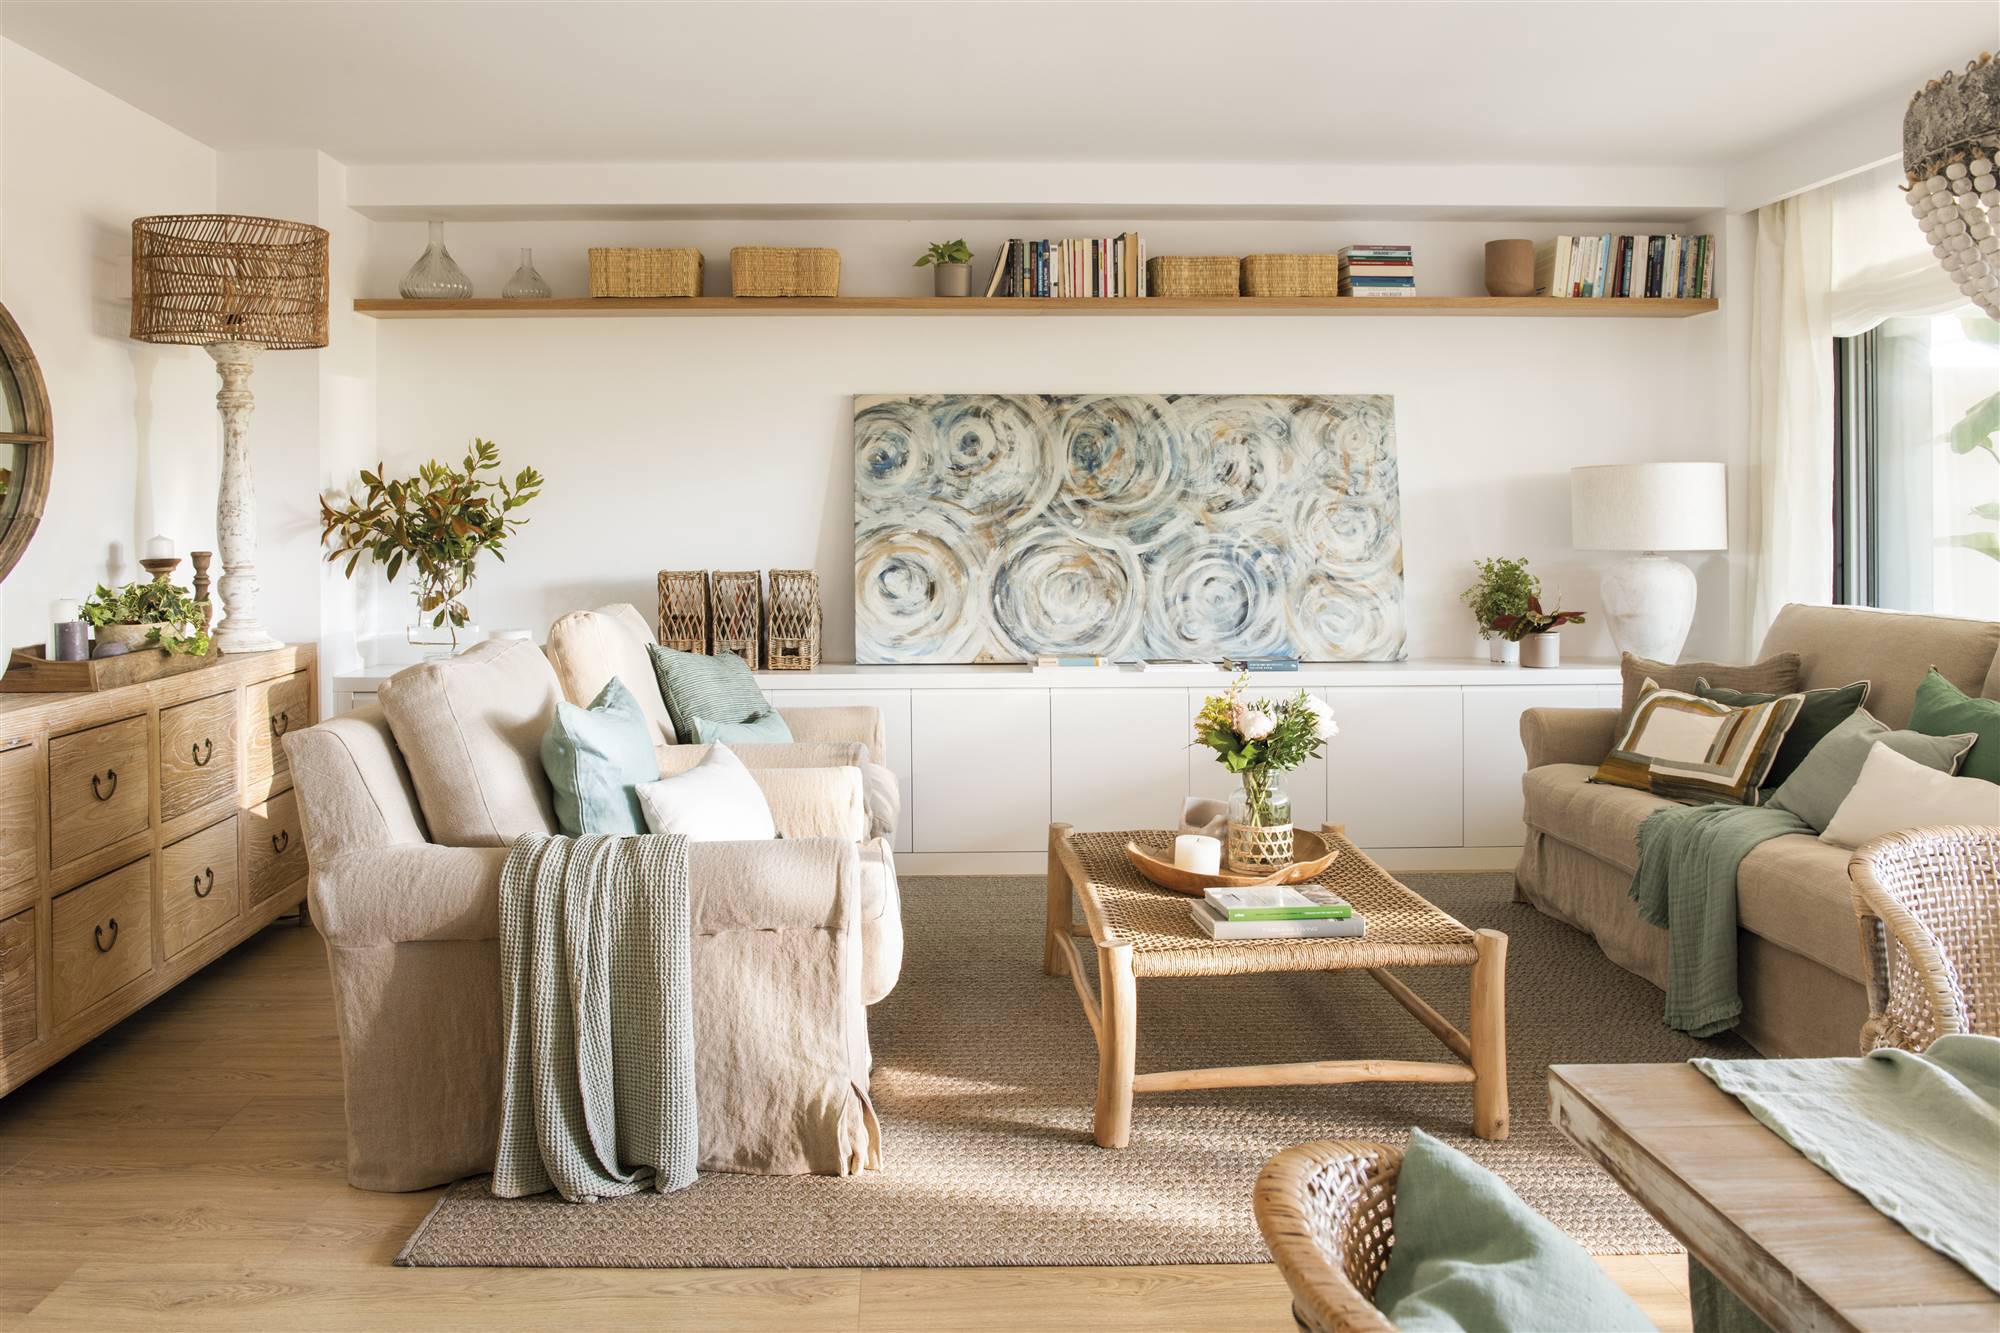 Salón con sofás enfrentados de color beige, mesa de madera y cuerda y mueble bajo blanco para almacenaje.